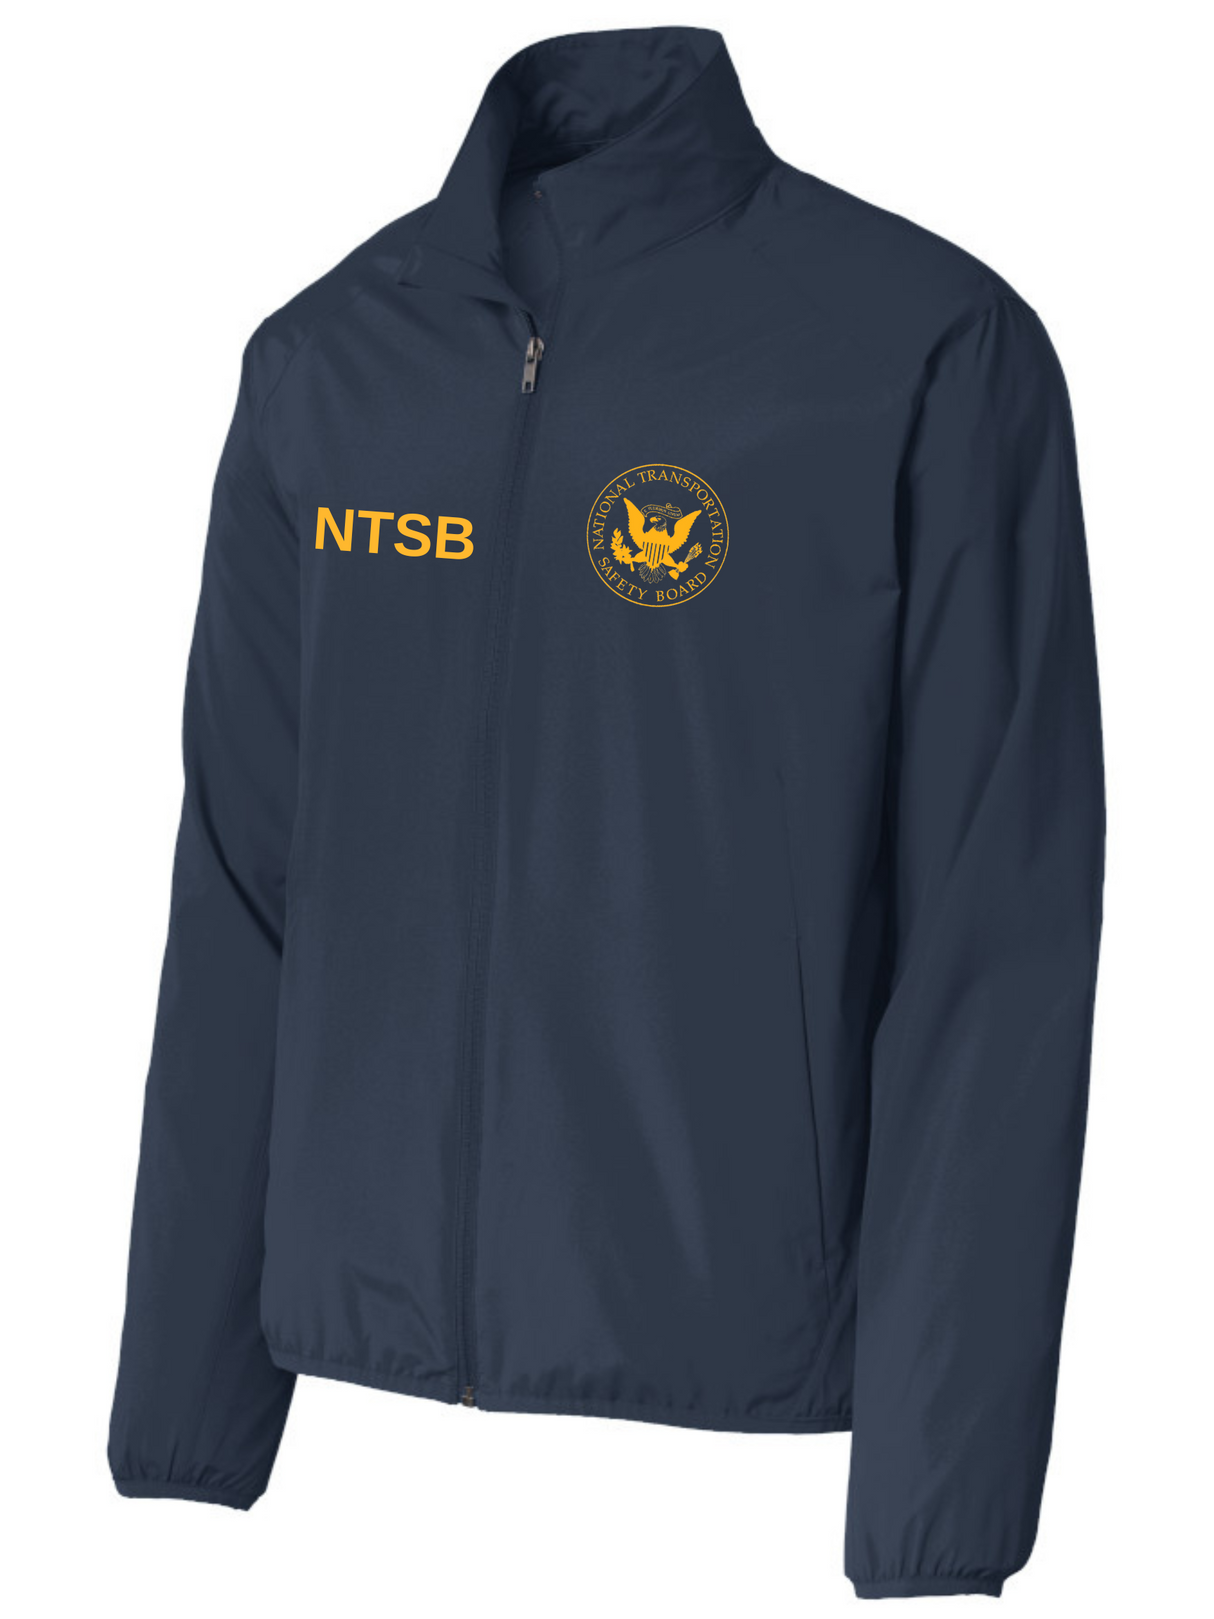 NTSB Agency Identifier Jacket - FEDS Apparel